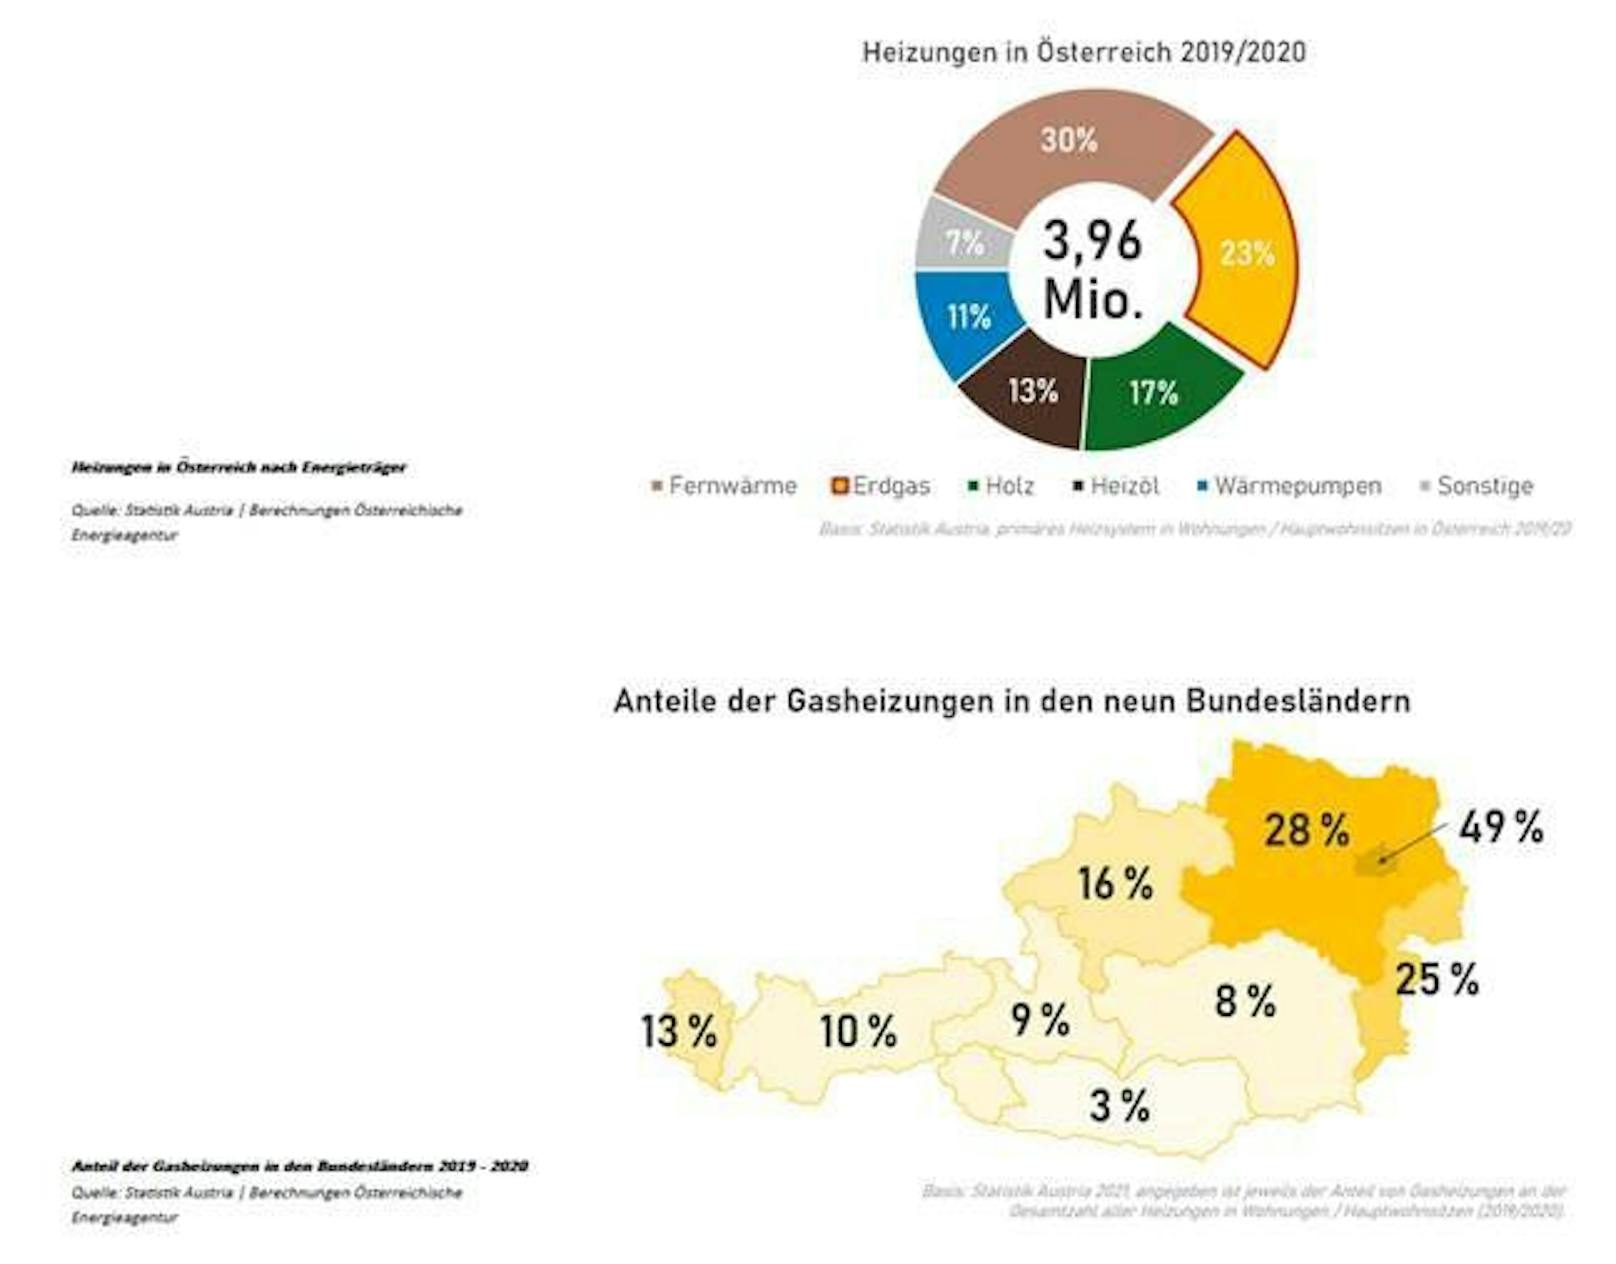 Heizungen in Österreich nach Energieträger.